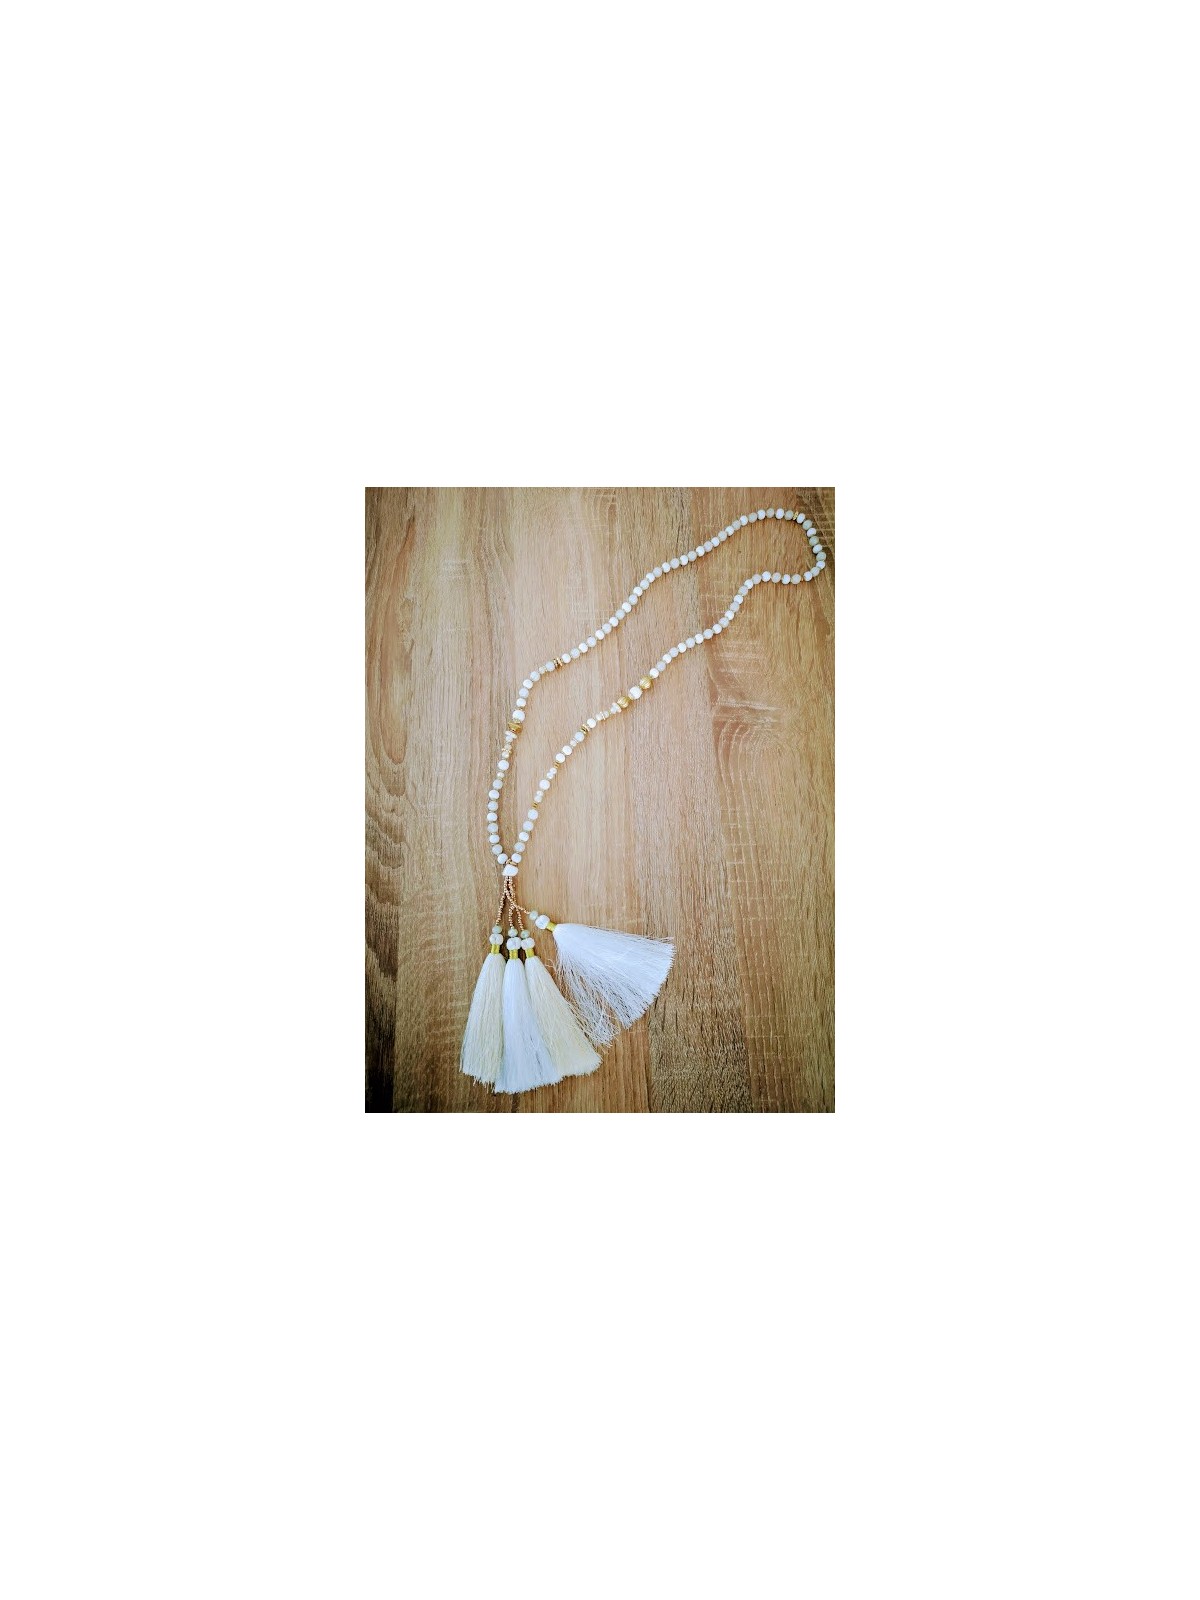 Sautoir bohème chic avec perles et pompons | 1 vue à plat | Tilleulmenthe boutique de mode femme en ligne